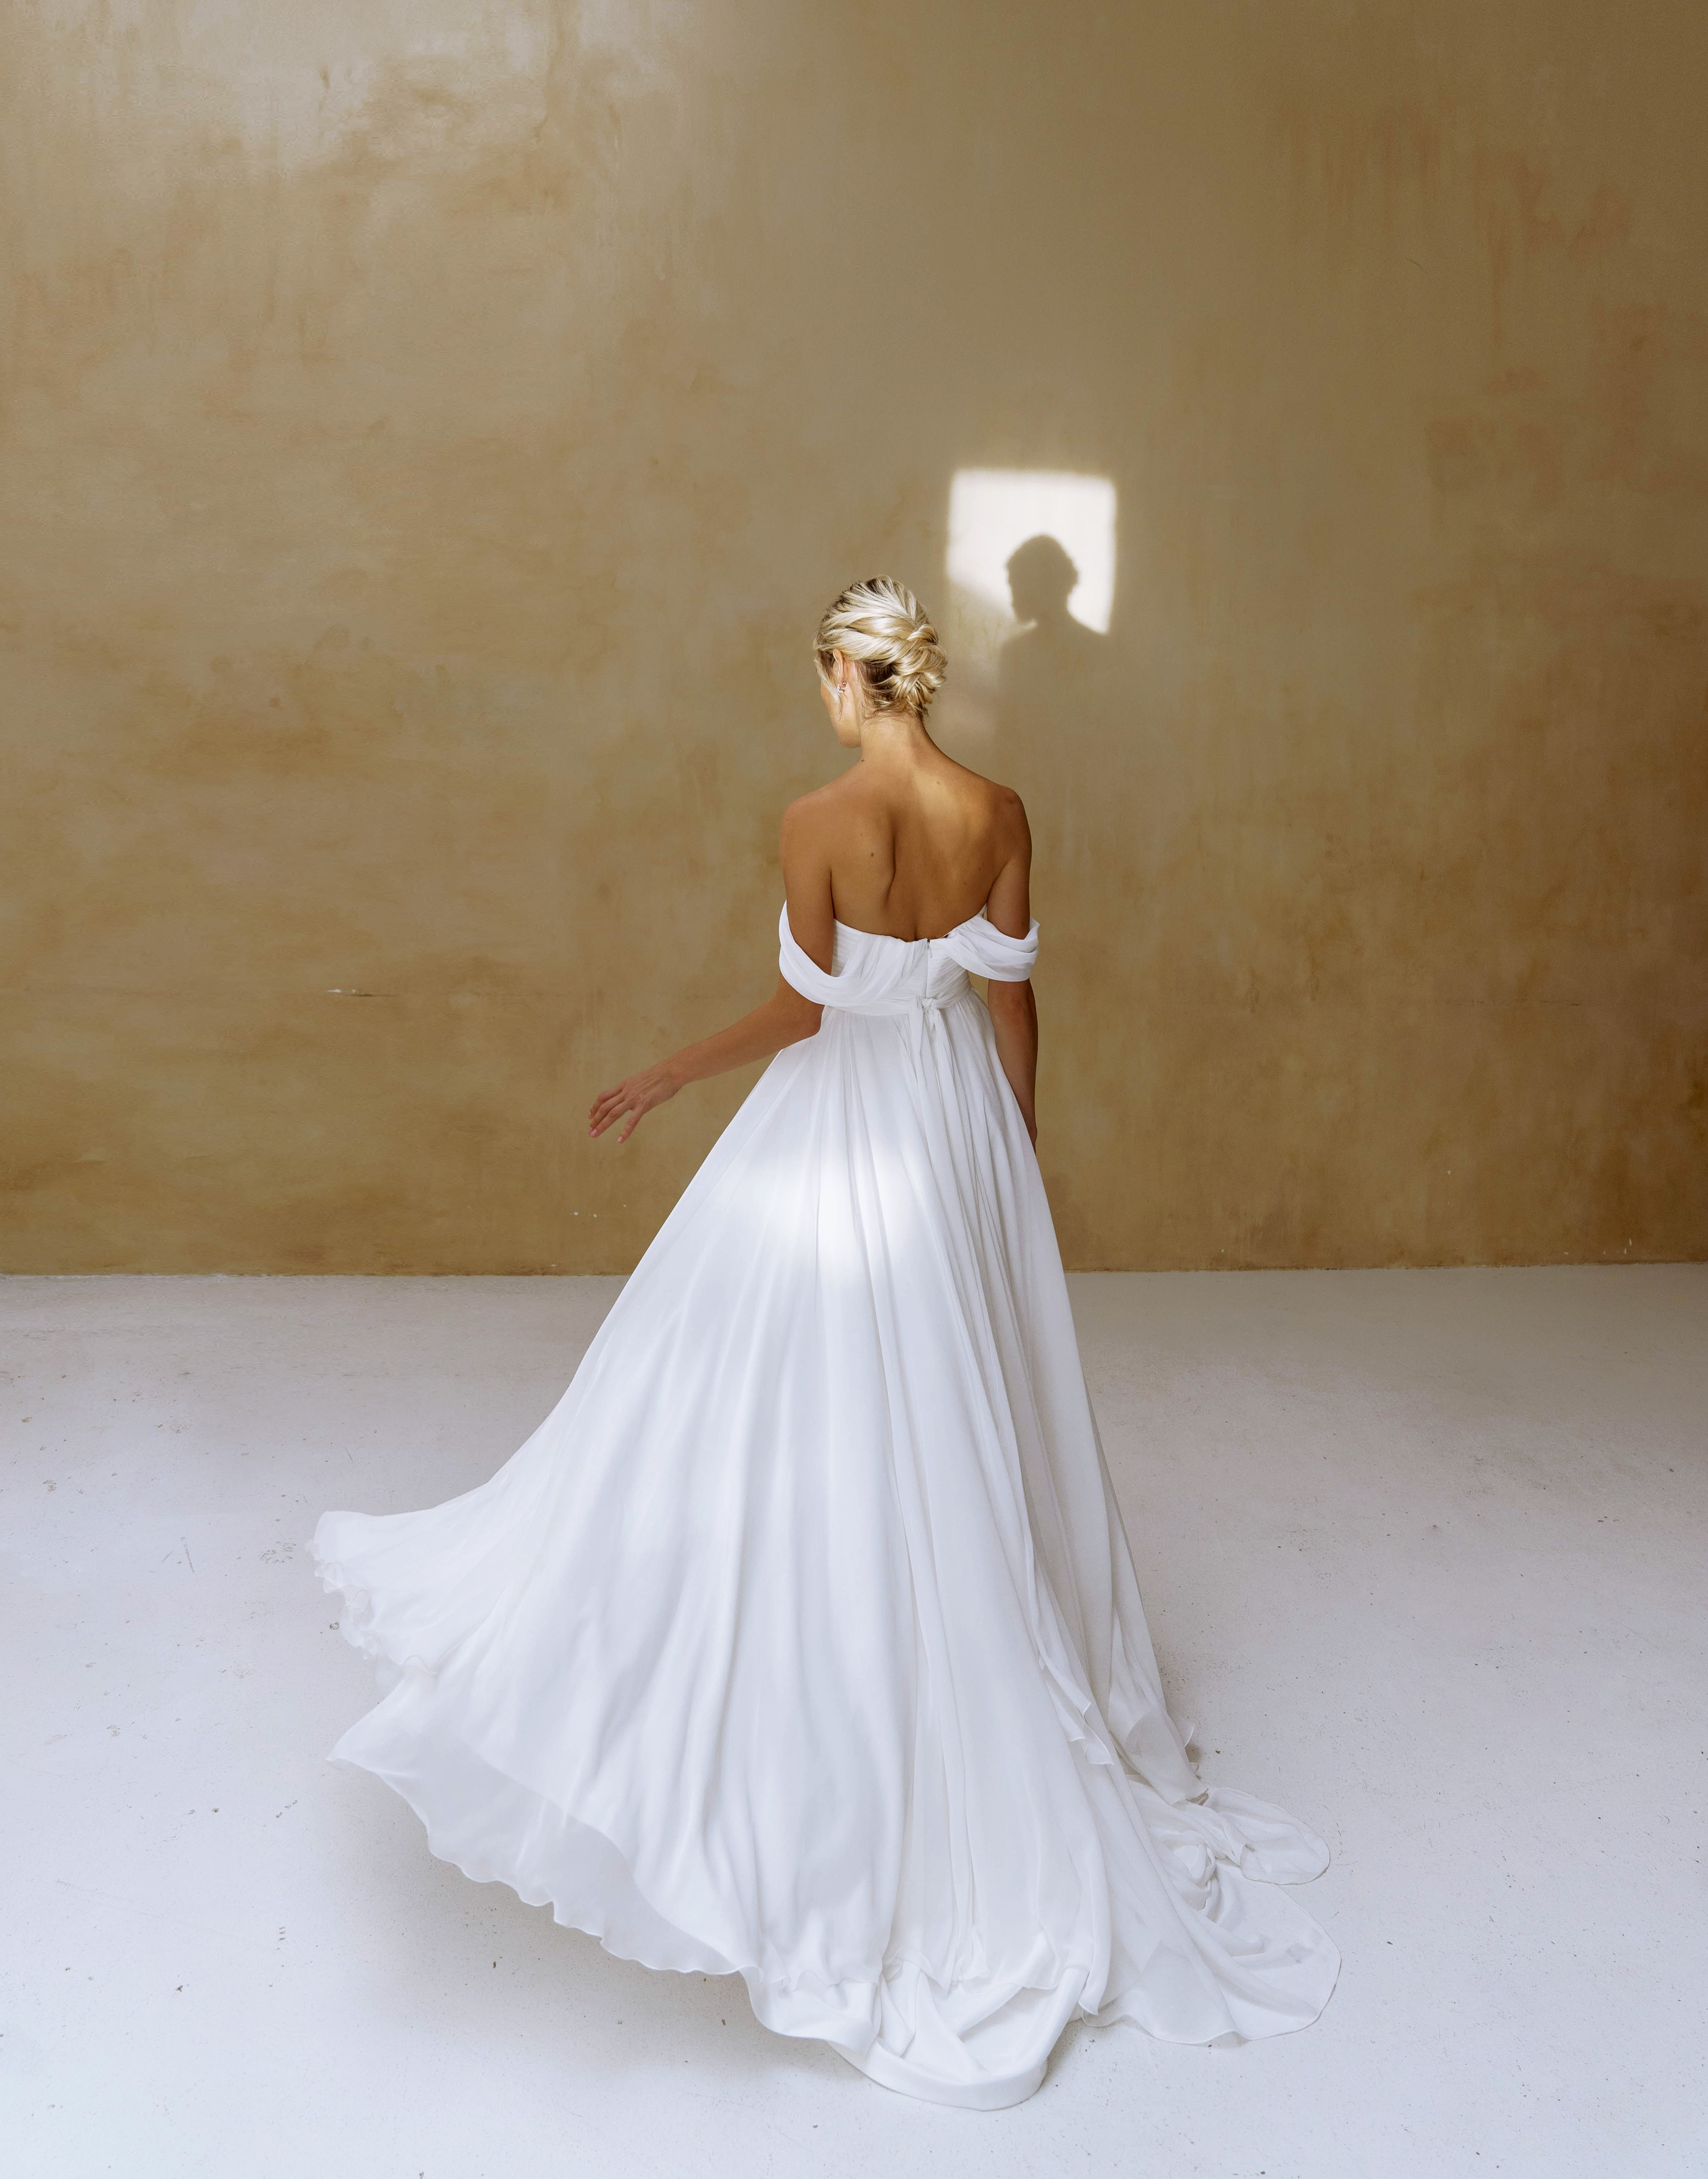 Купить свадебное платье «Солтис» Наталья Романова из коллекции Блаш Бриз 2022 года в салоне «Мэри Трюфель»